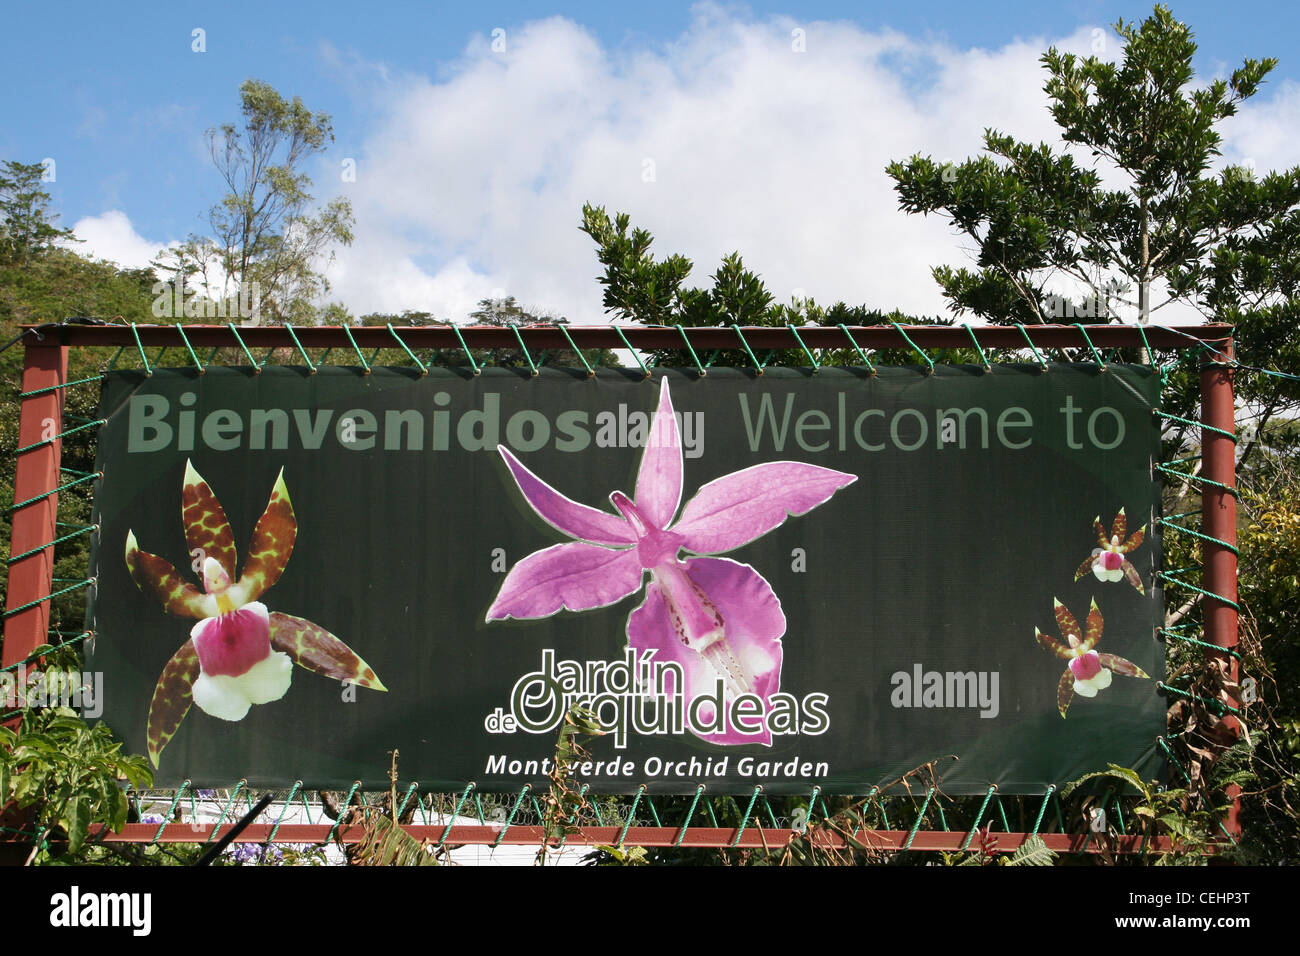 Monteverde Orchid Garden - Jardin de Orquideas Stock Photo - Alamy